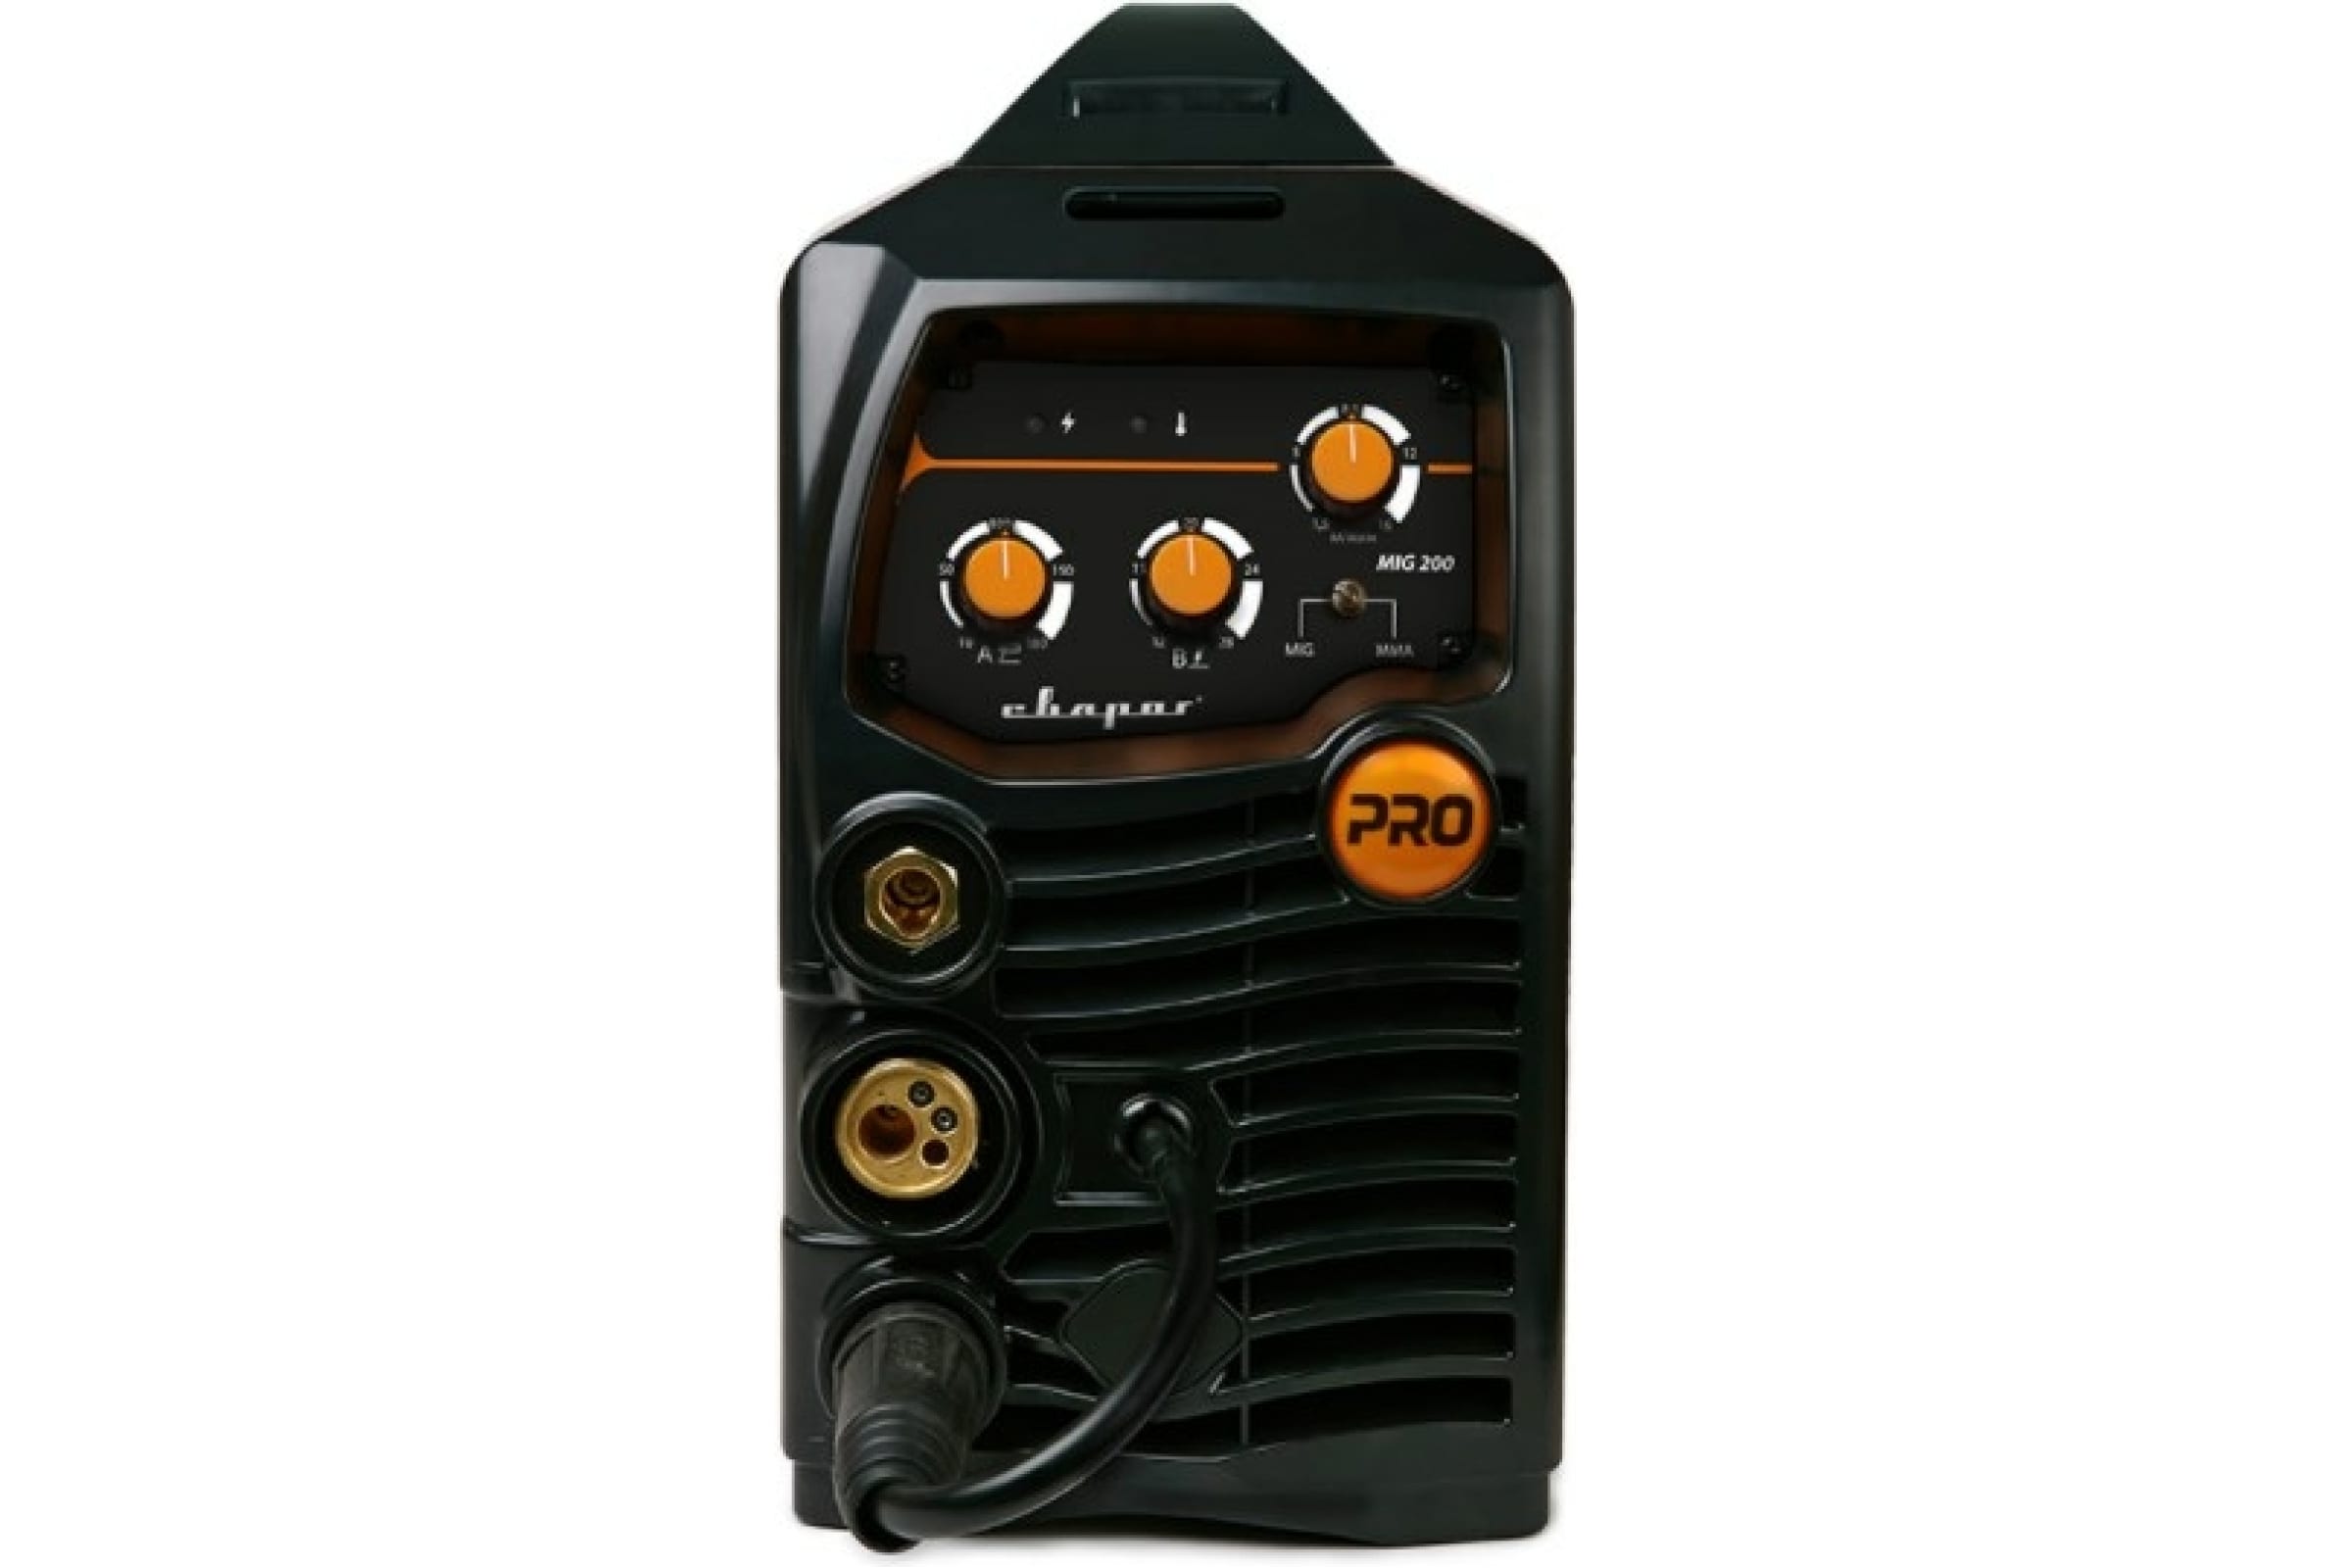 Тиг 200 про. Сварог Pro Tig 200 p DSP AC/DC. Сварог Pro mig 200 Synergy (n229). Сварочный аппарат Tig 200 DSP AC/DC Сварог. Сварочный полуавтомат Сварог Pro mig 200.